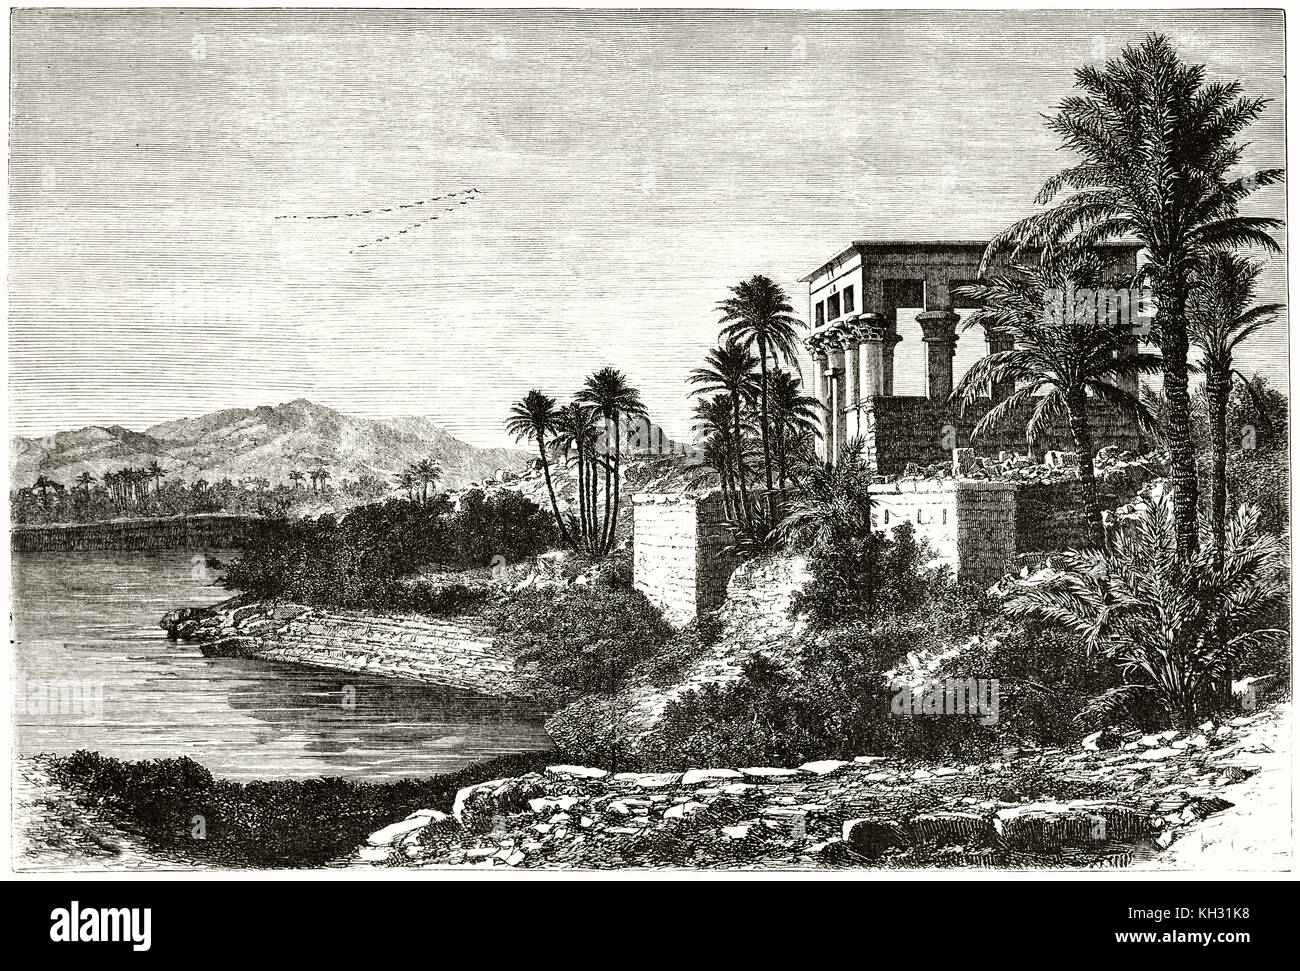 Vista anterior del templo de Isis, la isla de Philae, río Nilo, Egipto. Por De Bar, publ. en le Tour du Monde, París, 1863 Foto de stock